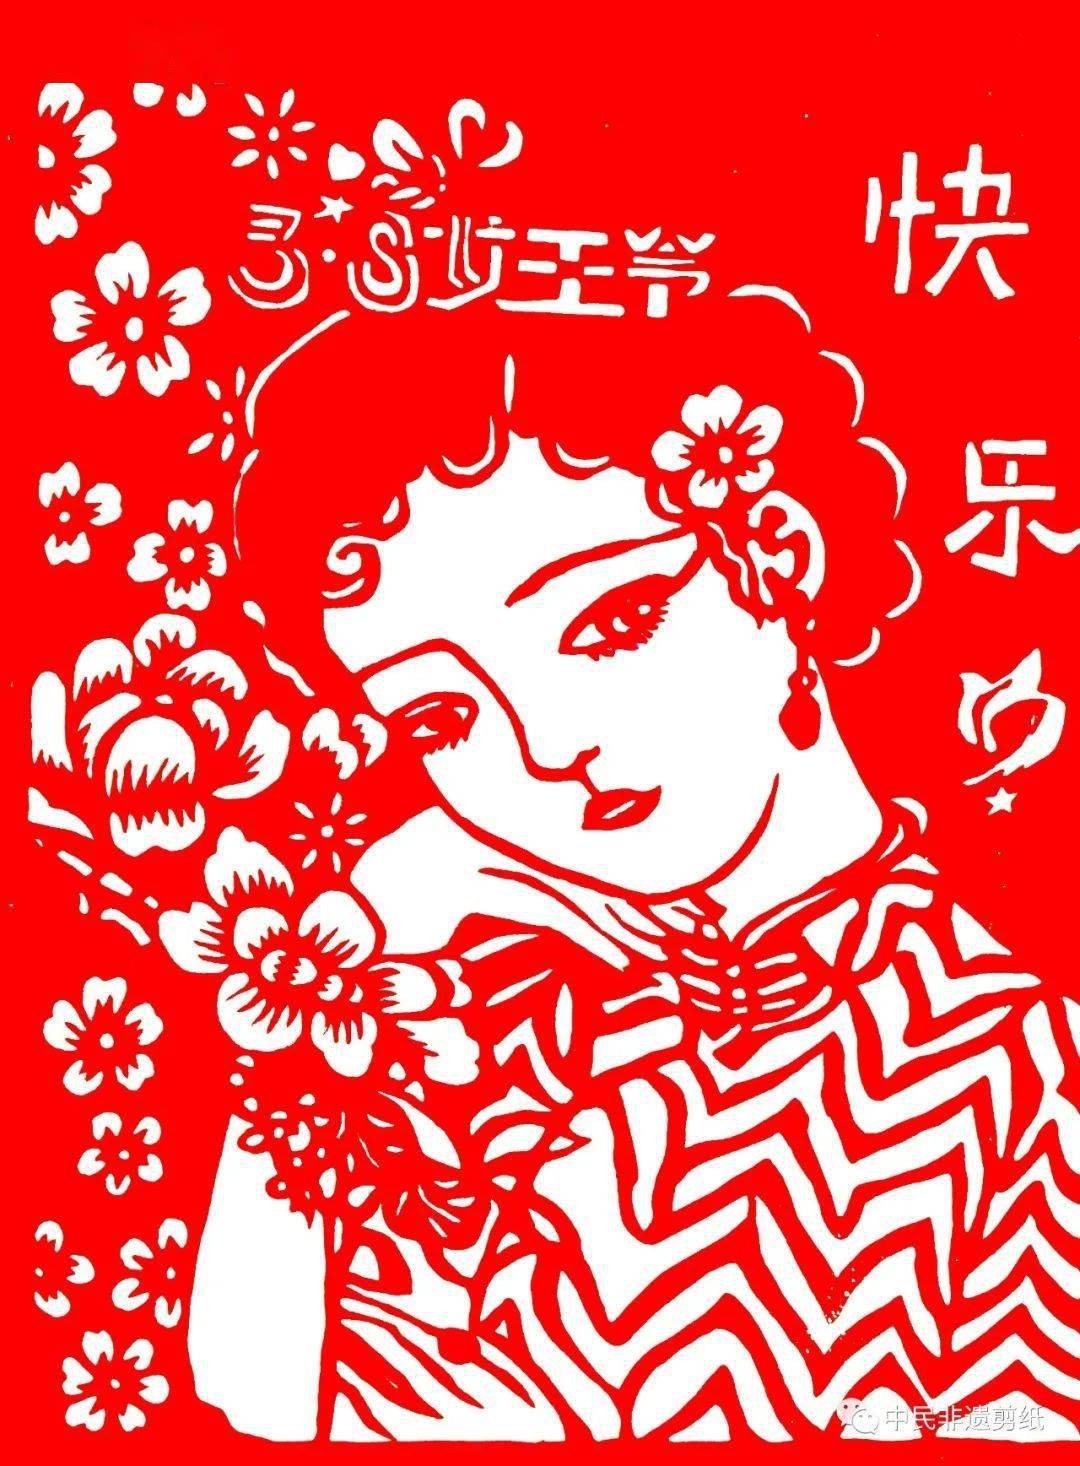 中民非遗剪纸传承人祝三八妇女节快乐